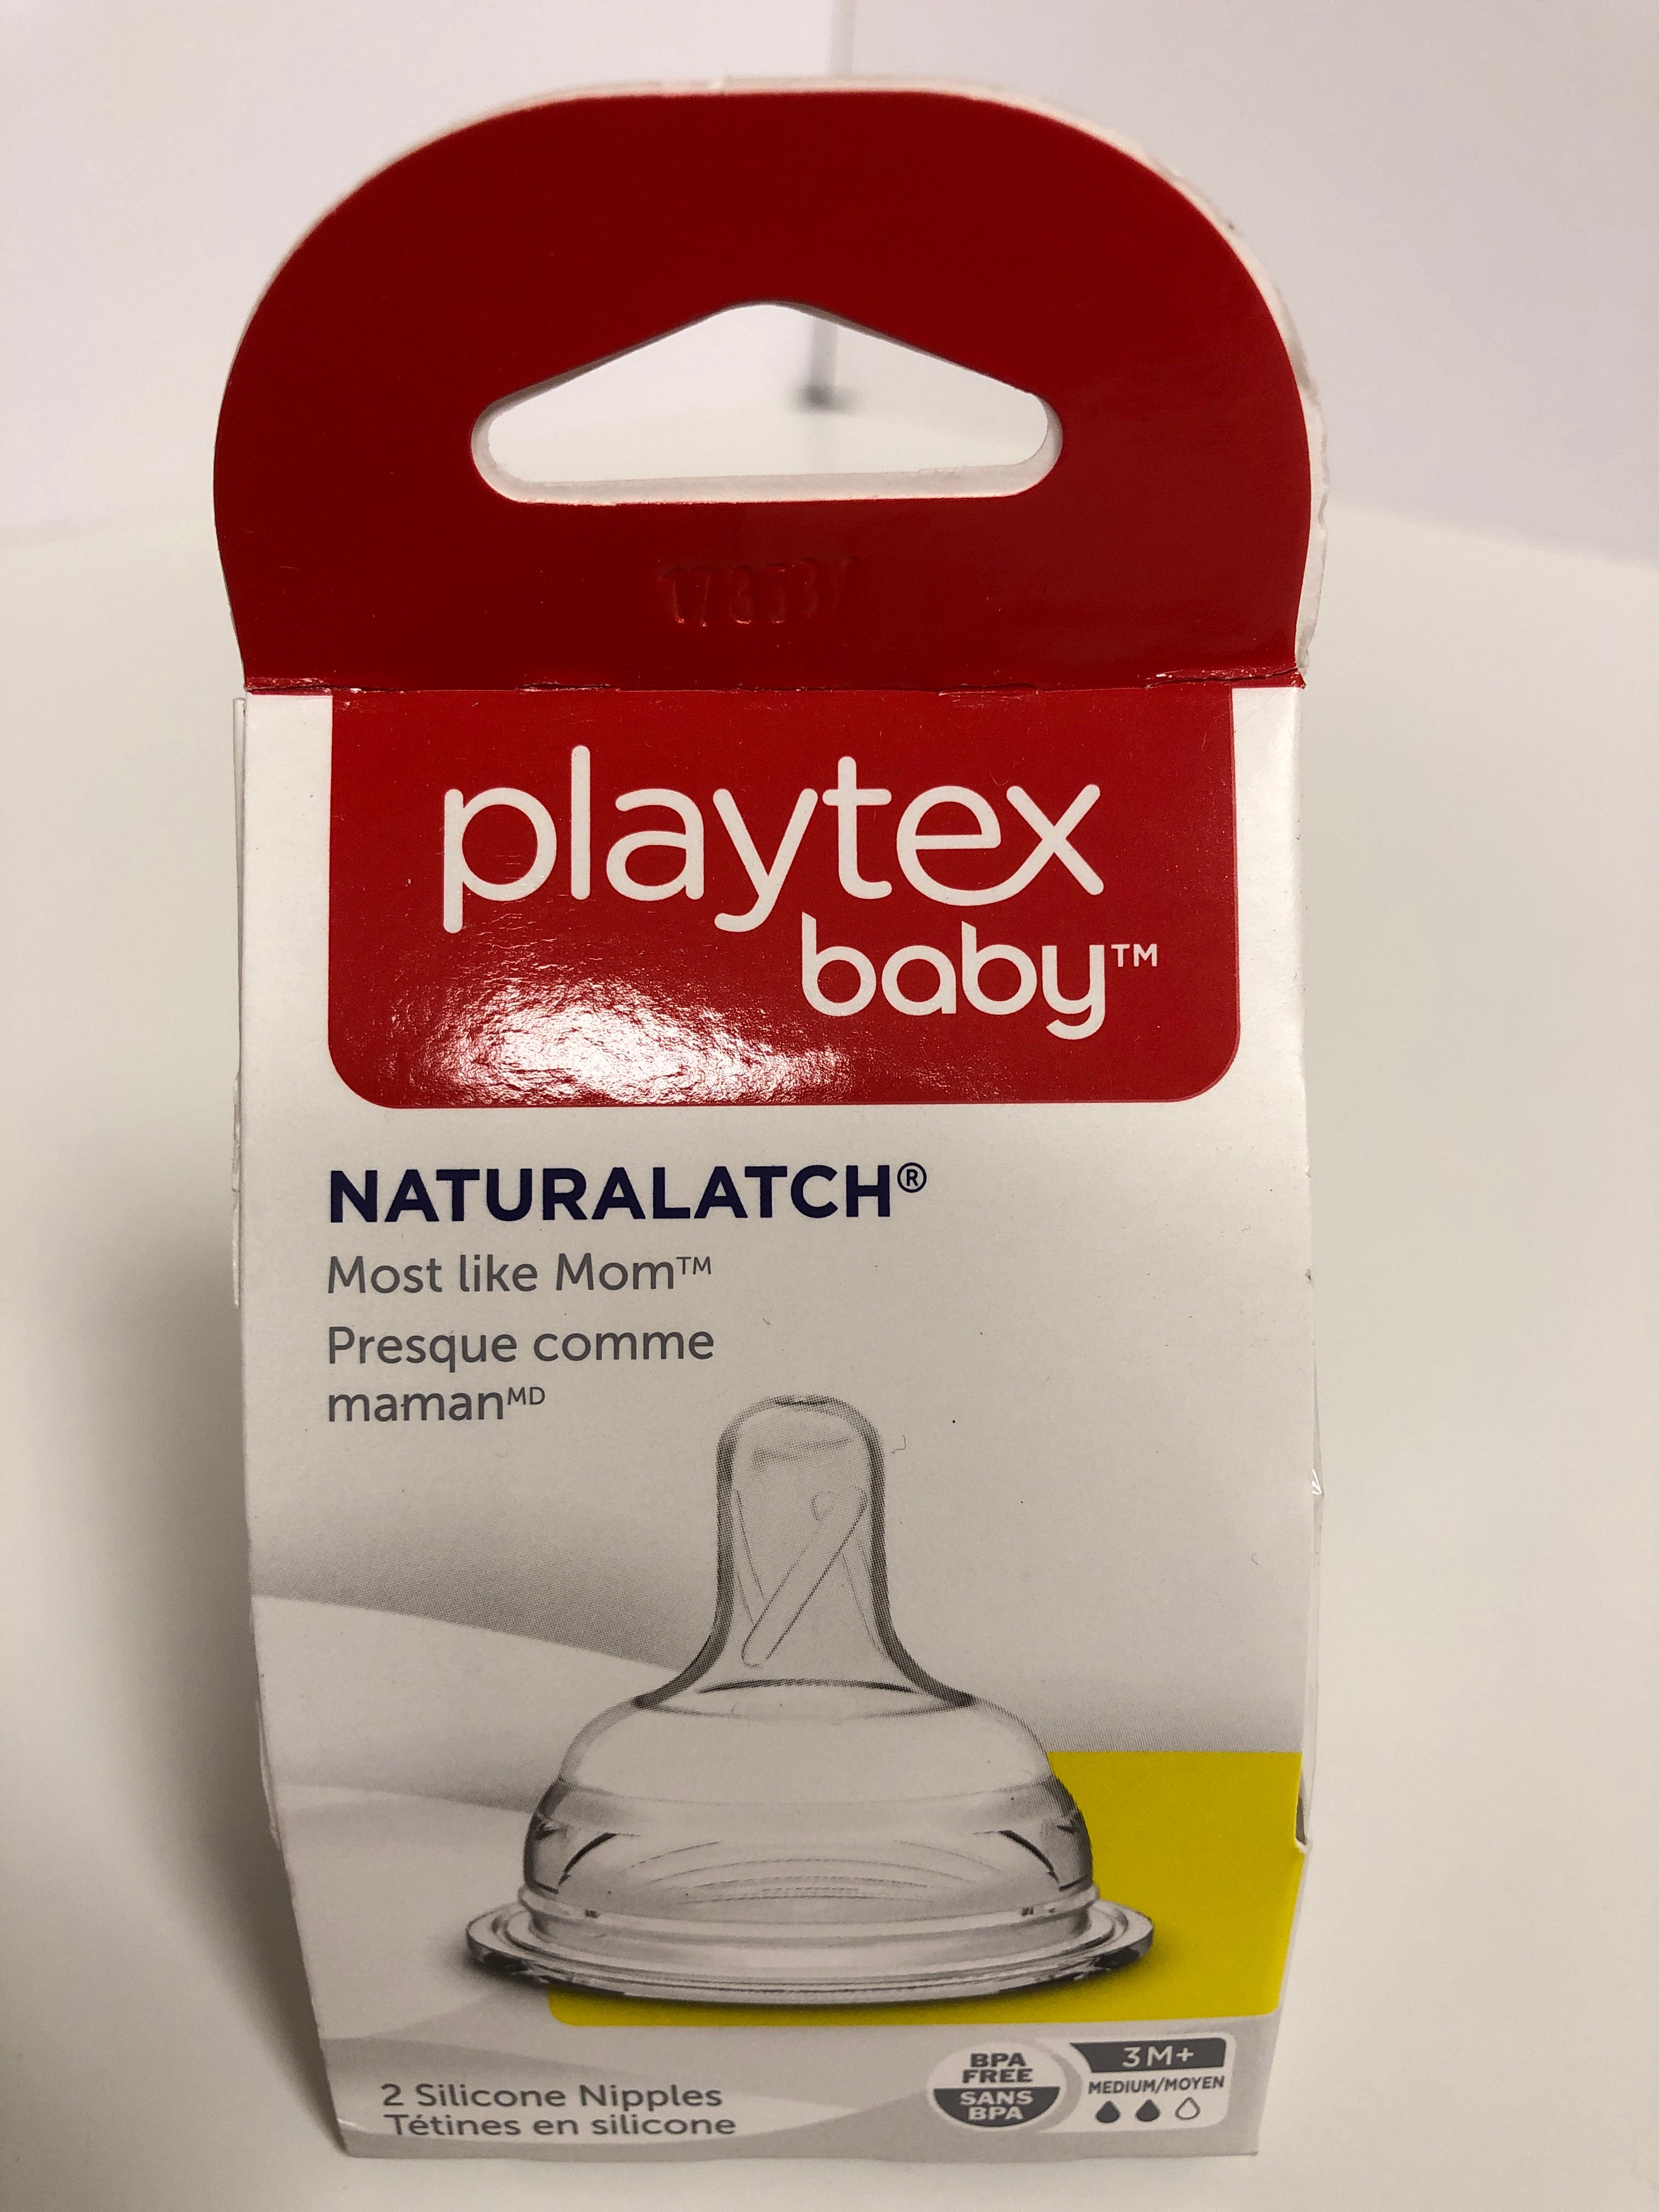 Playtex Baby Naturalatch 2 Silicone Nipples Like Mom BPA Free 3M+ Medium